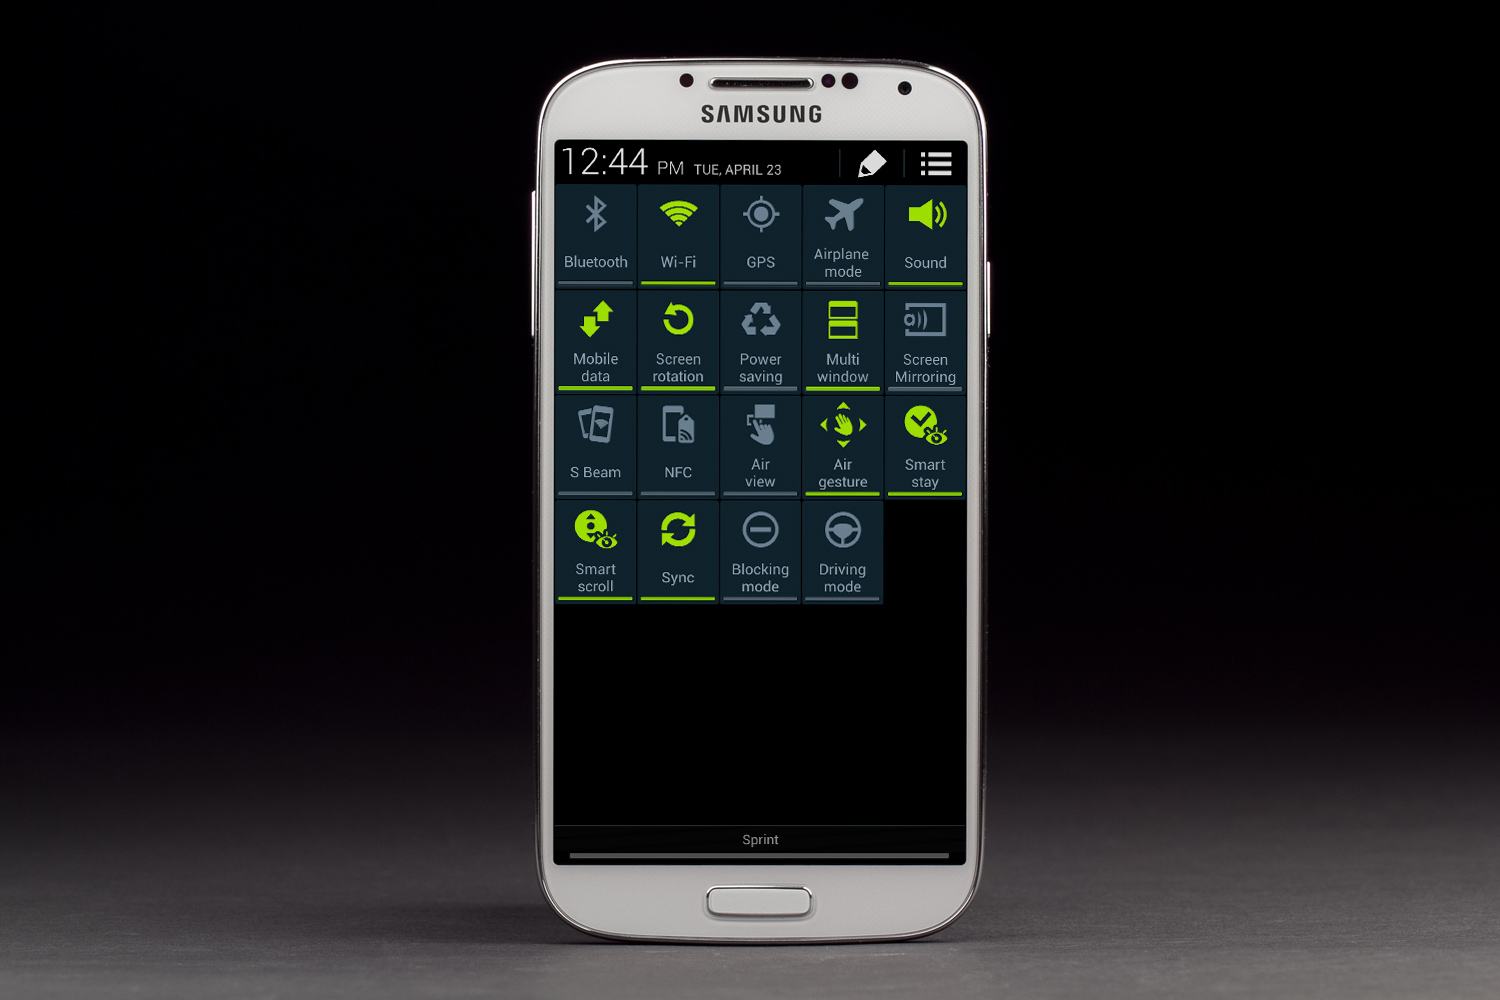   Samsung Galaxy S4 